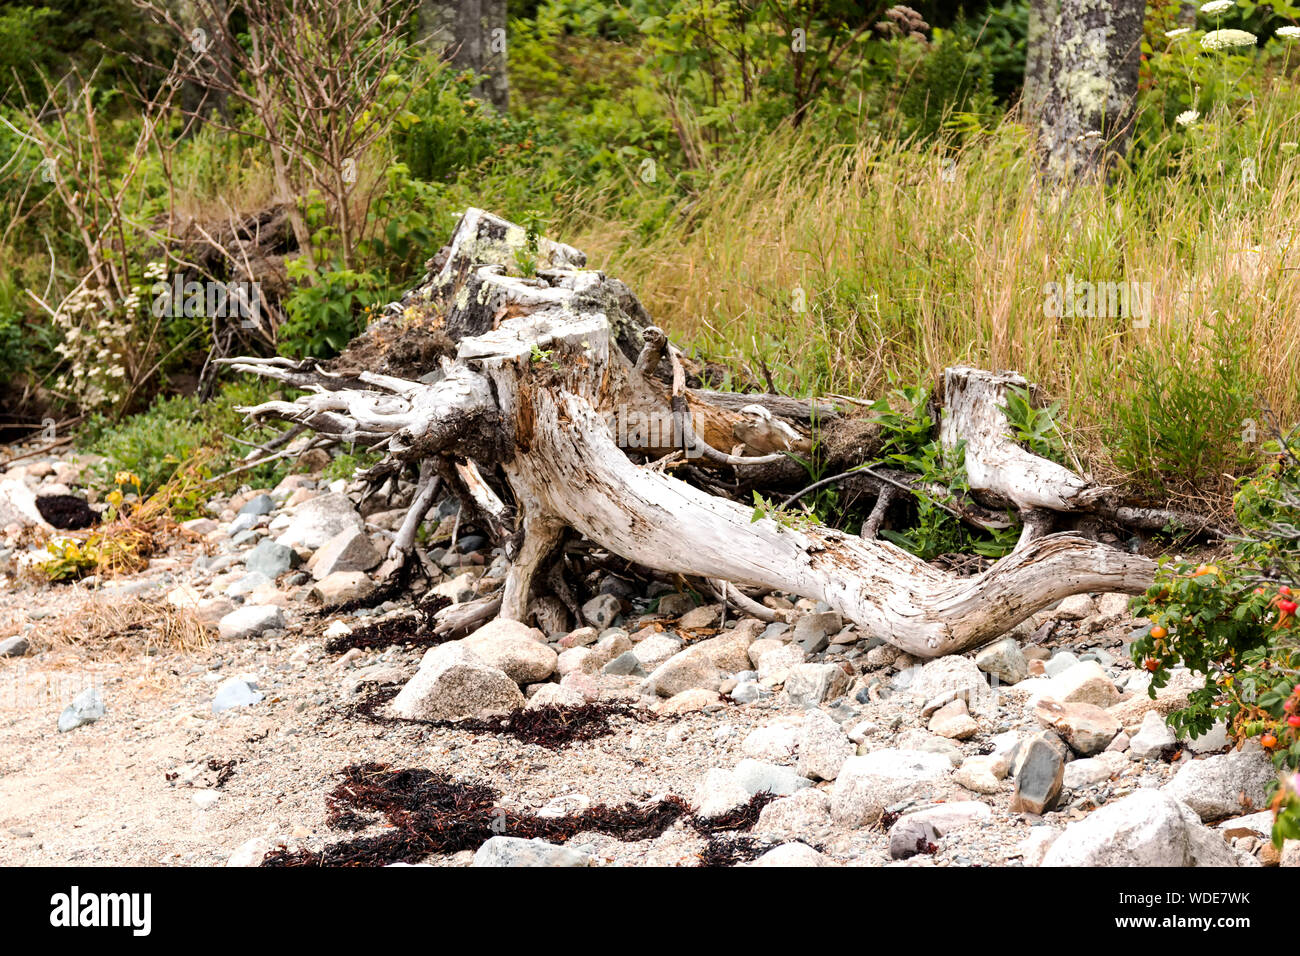 La martoriata costa di Vinalhaven isola nel Maine ha ceppi di alberi, rocce e alghe marine che mostra la battitura il litorale prende. Foto Stock